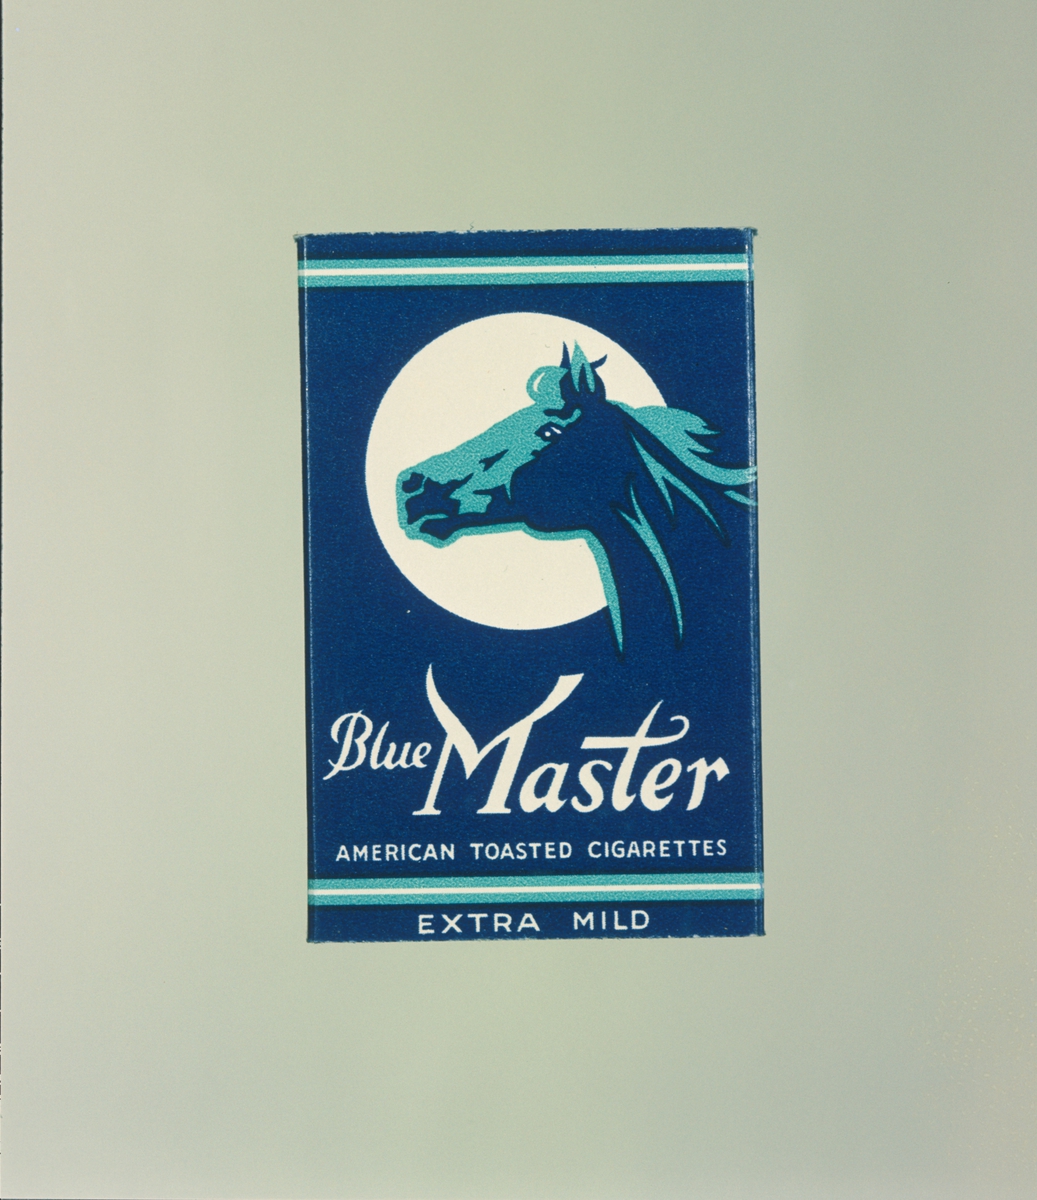 Reklamefoto av Blue Master sigaretter.